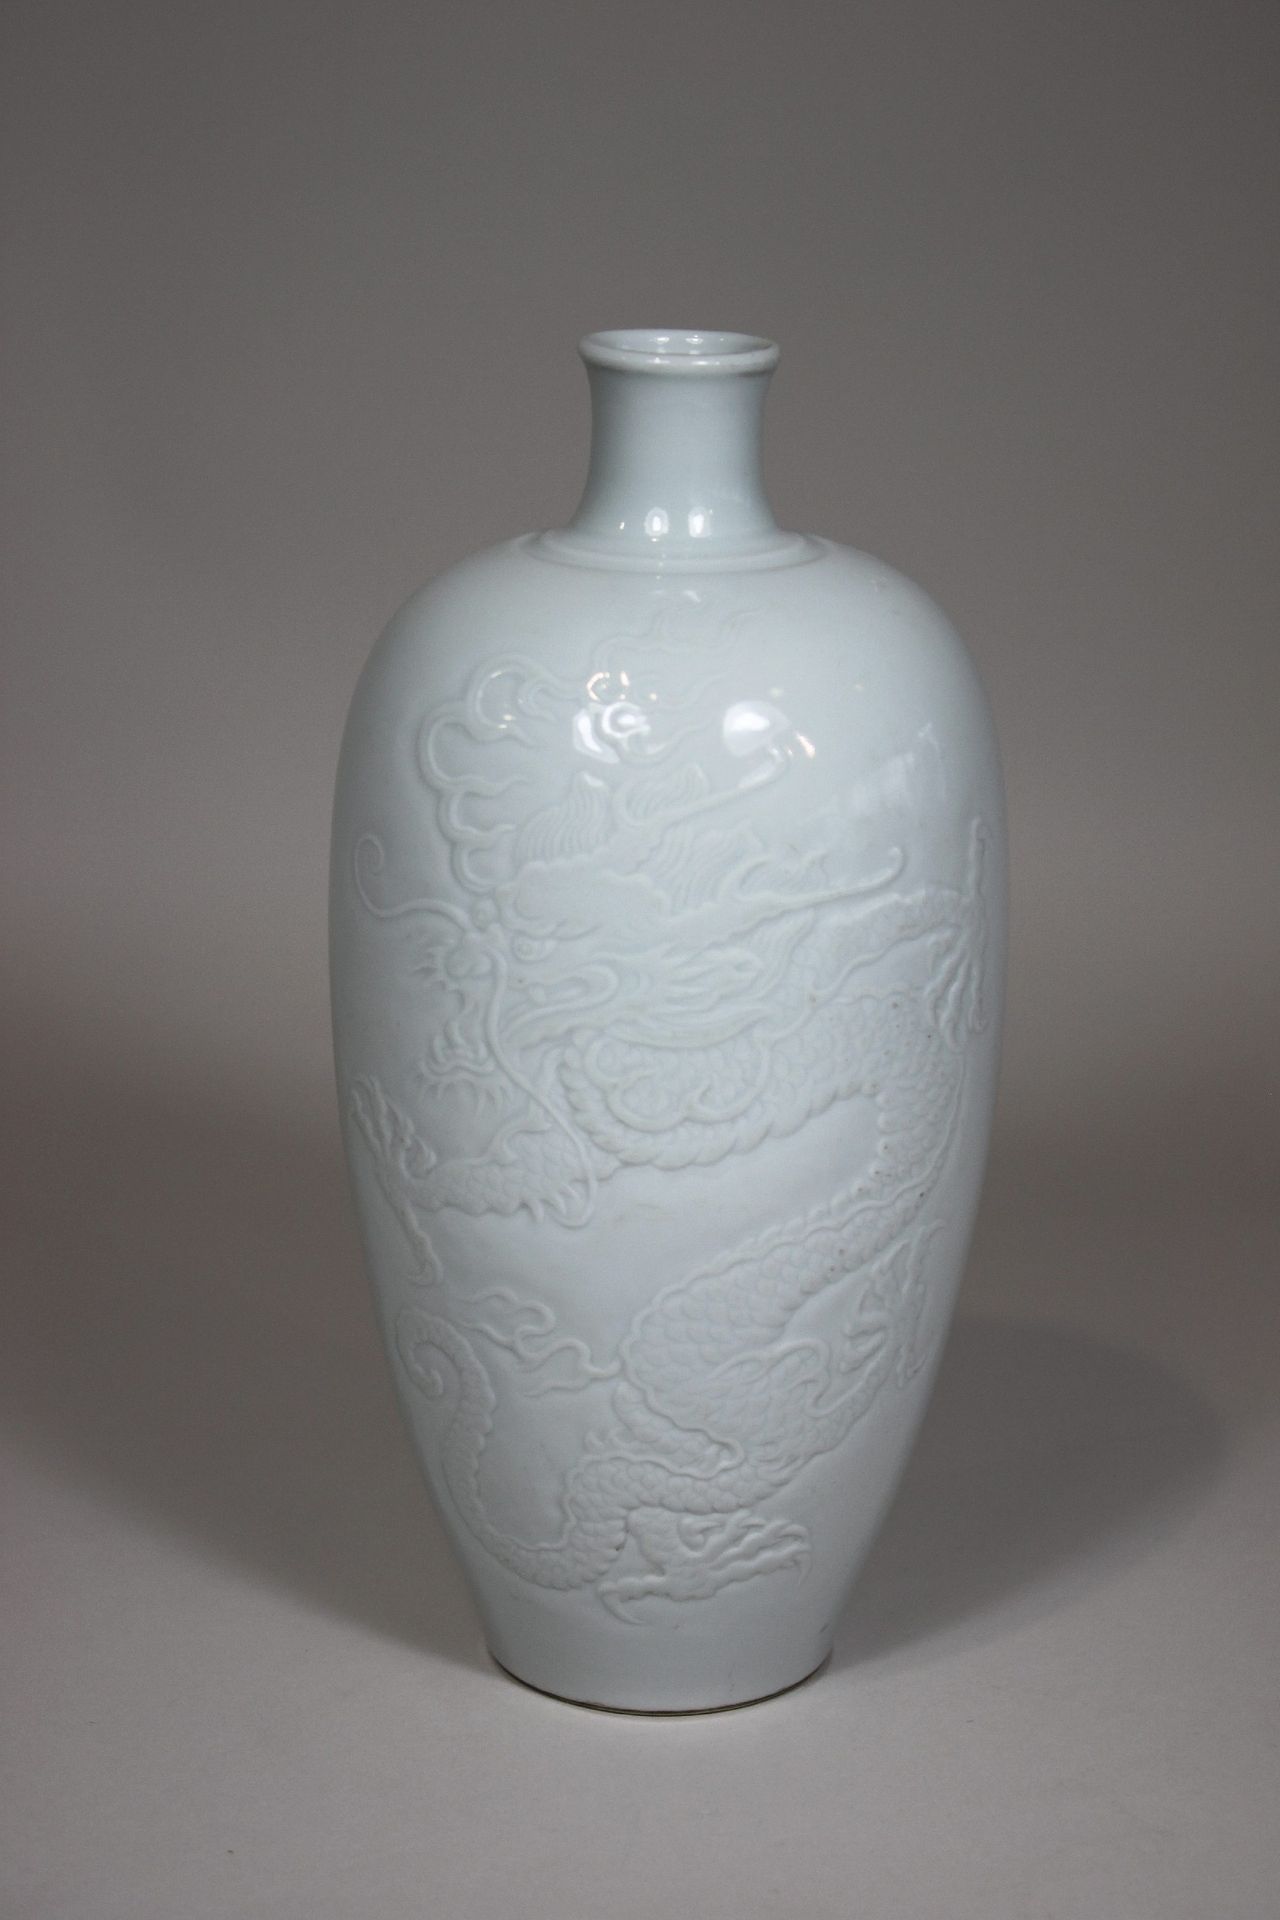 花瓶，中国，大清王朝，康熙时期的标志，大概是20世纪，龙形浮雕装饰